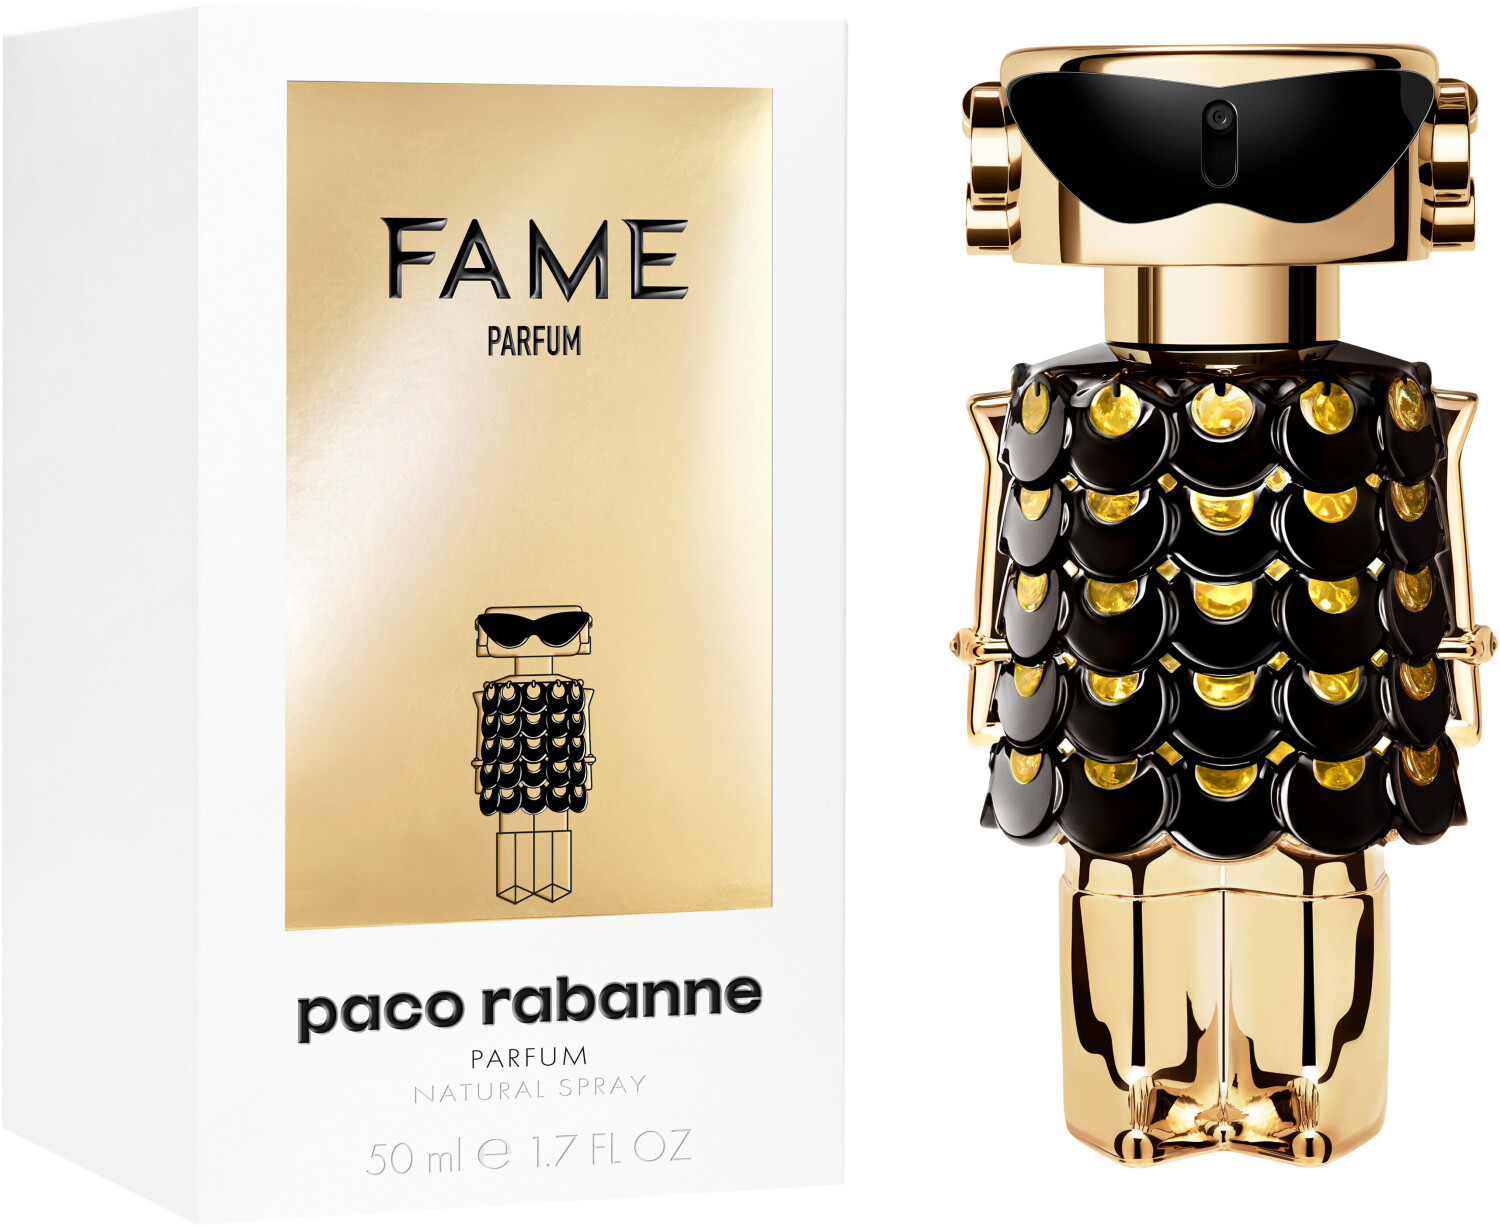 Paco Rabanne Fame Duft 80 ml nachfüllbar, € 62,- (3361 Aschbach-Markt) -  willhaben